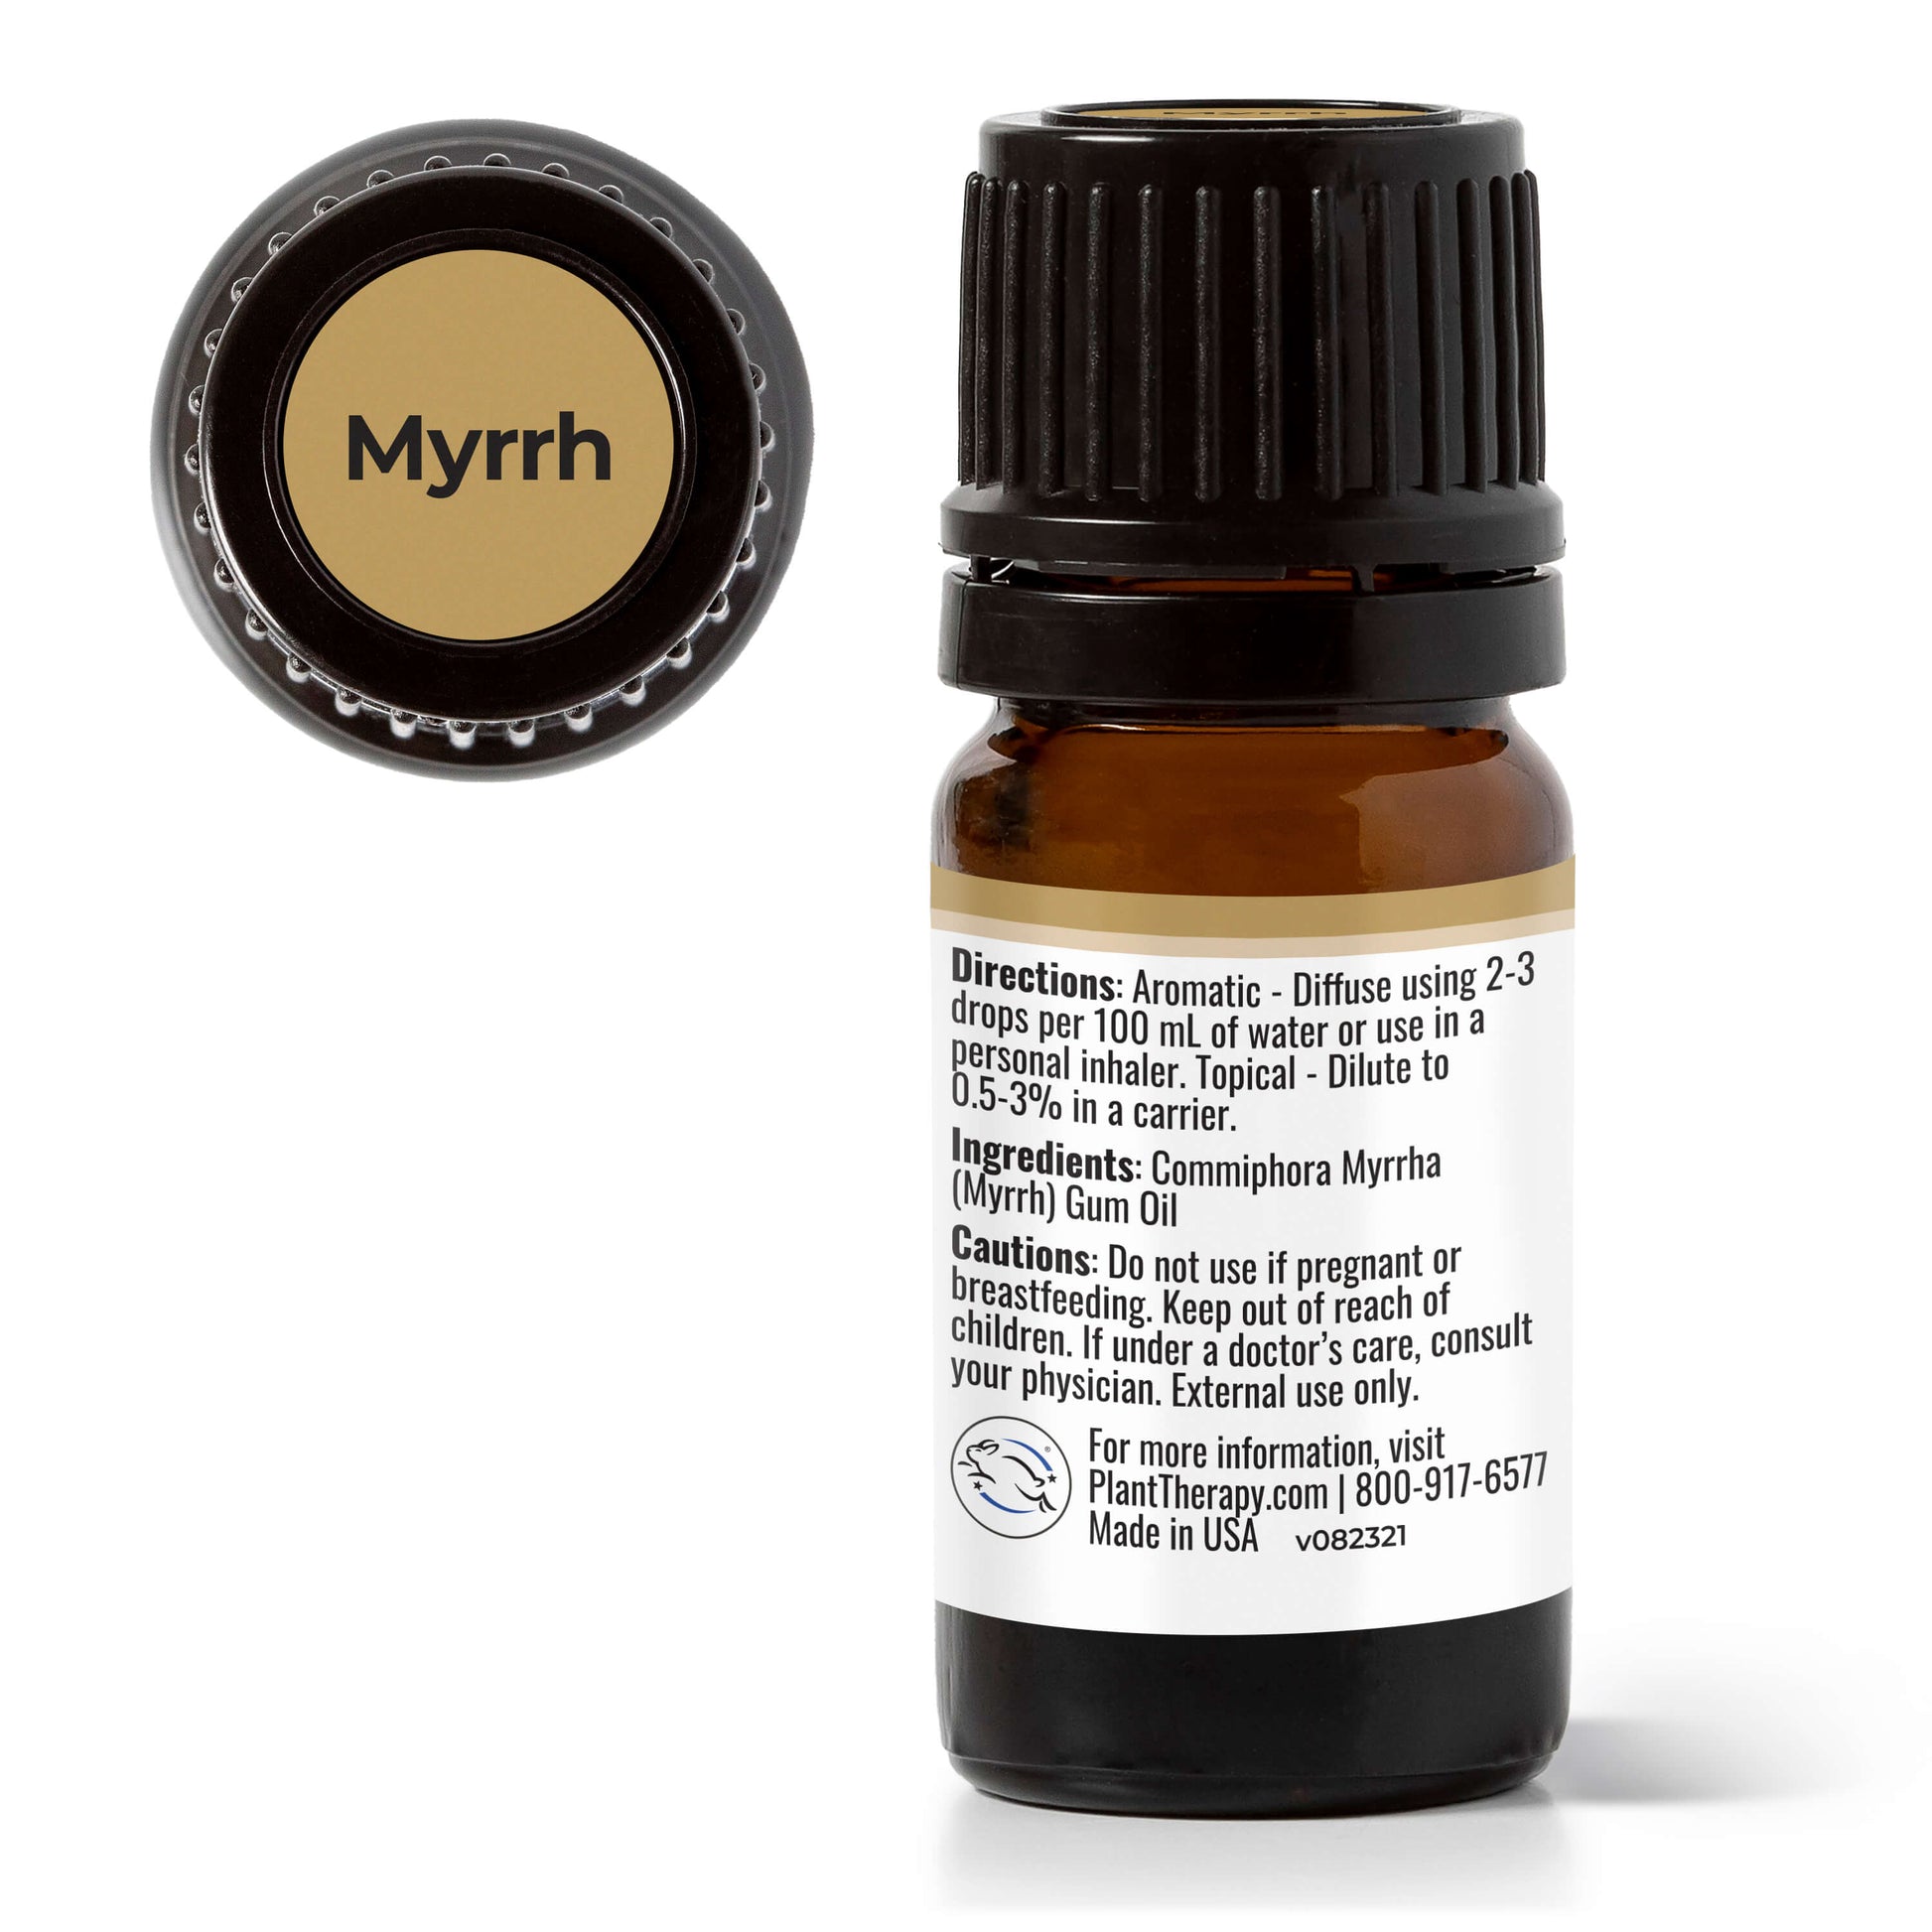 Heytree Myrrh Essential Oil Myrrh Oil - Temu